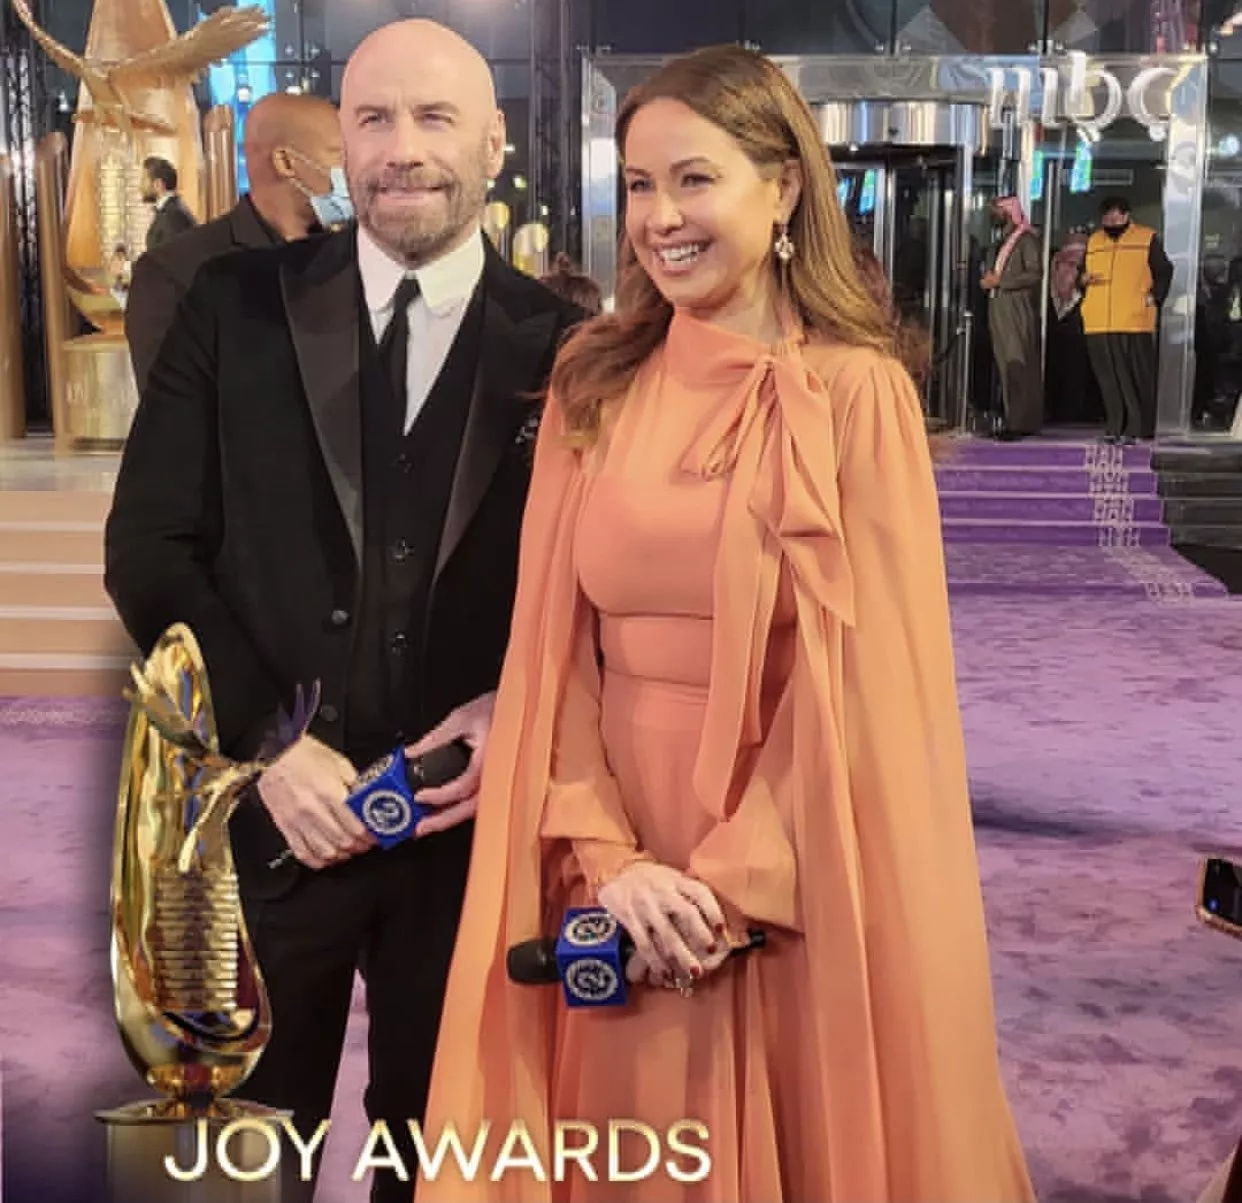 أبرز طلات النجمات في حفل صناع الترفيه Joy Awards 2022 في موسم الرياض